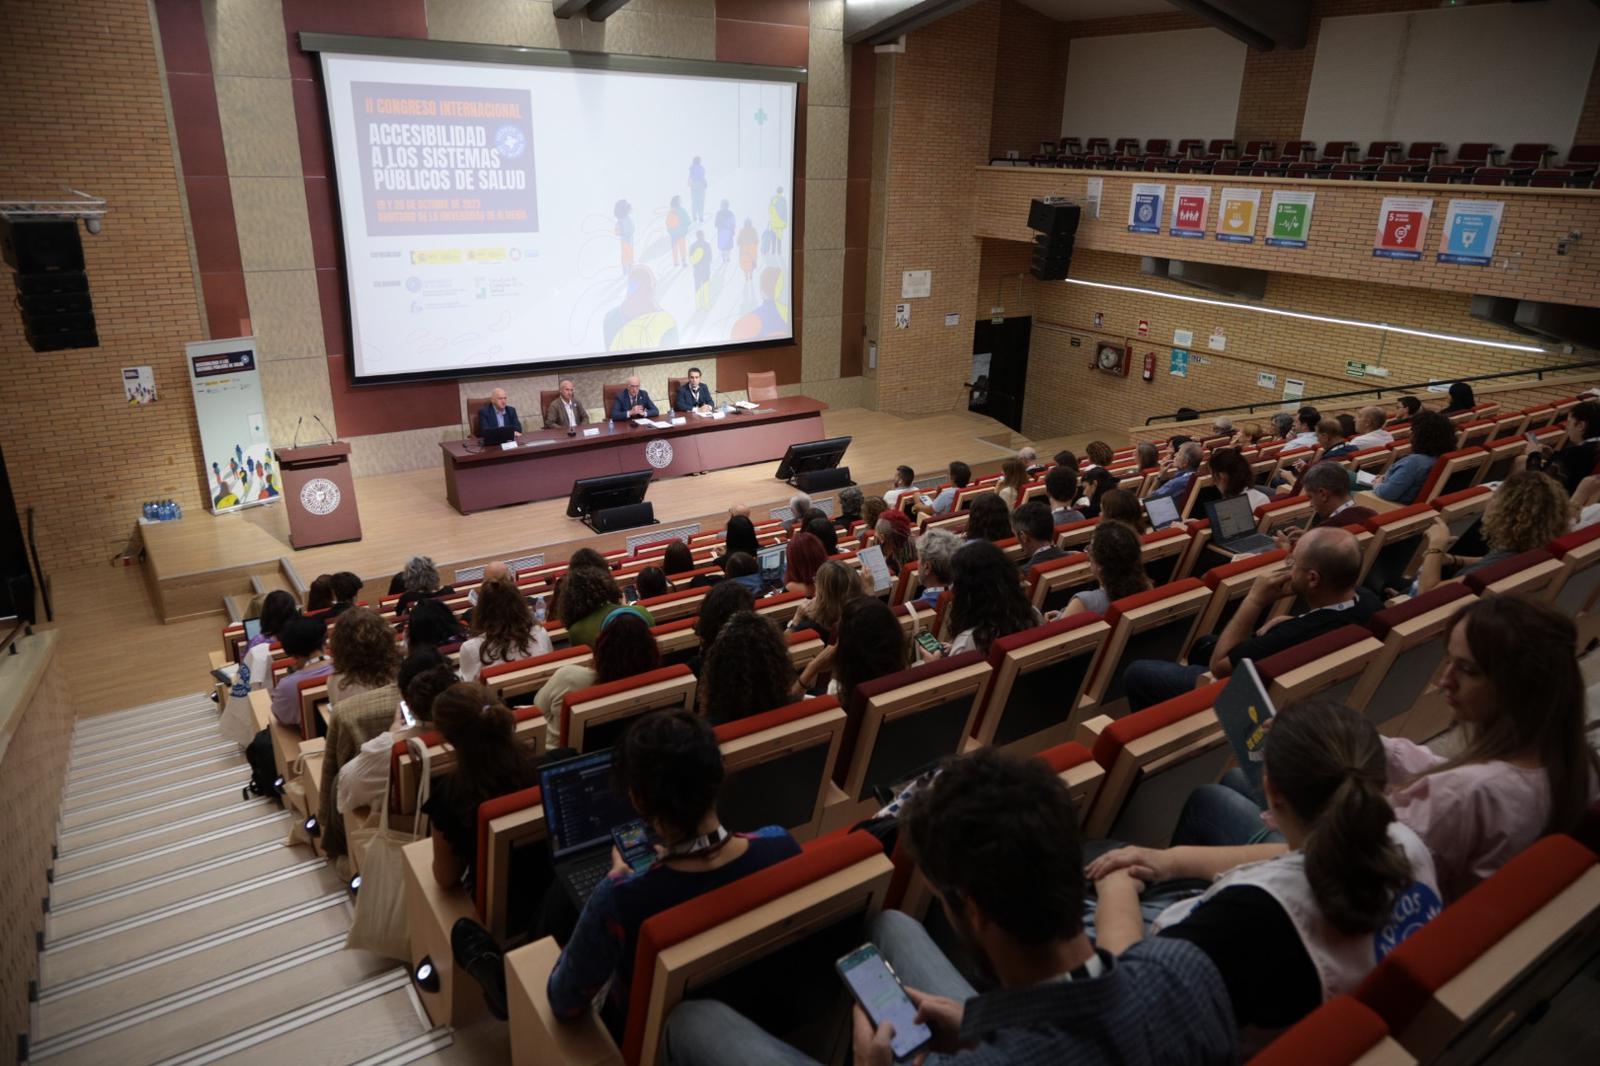 II Congreso de Accesibilidad a los Sistemas Públicos de Salud en la Universidad de Almería